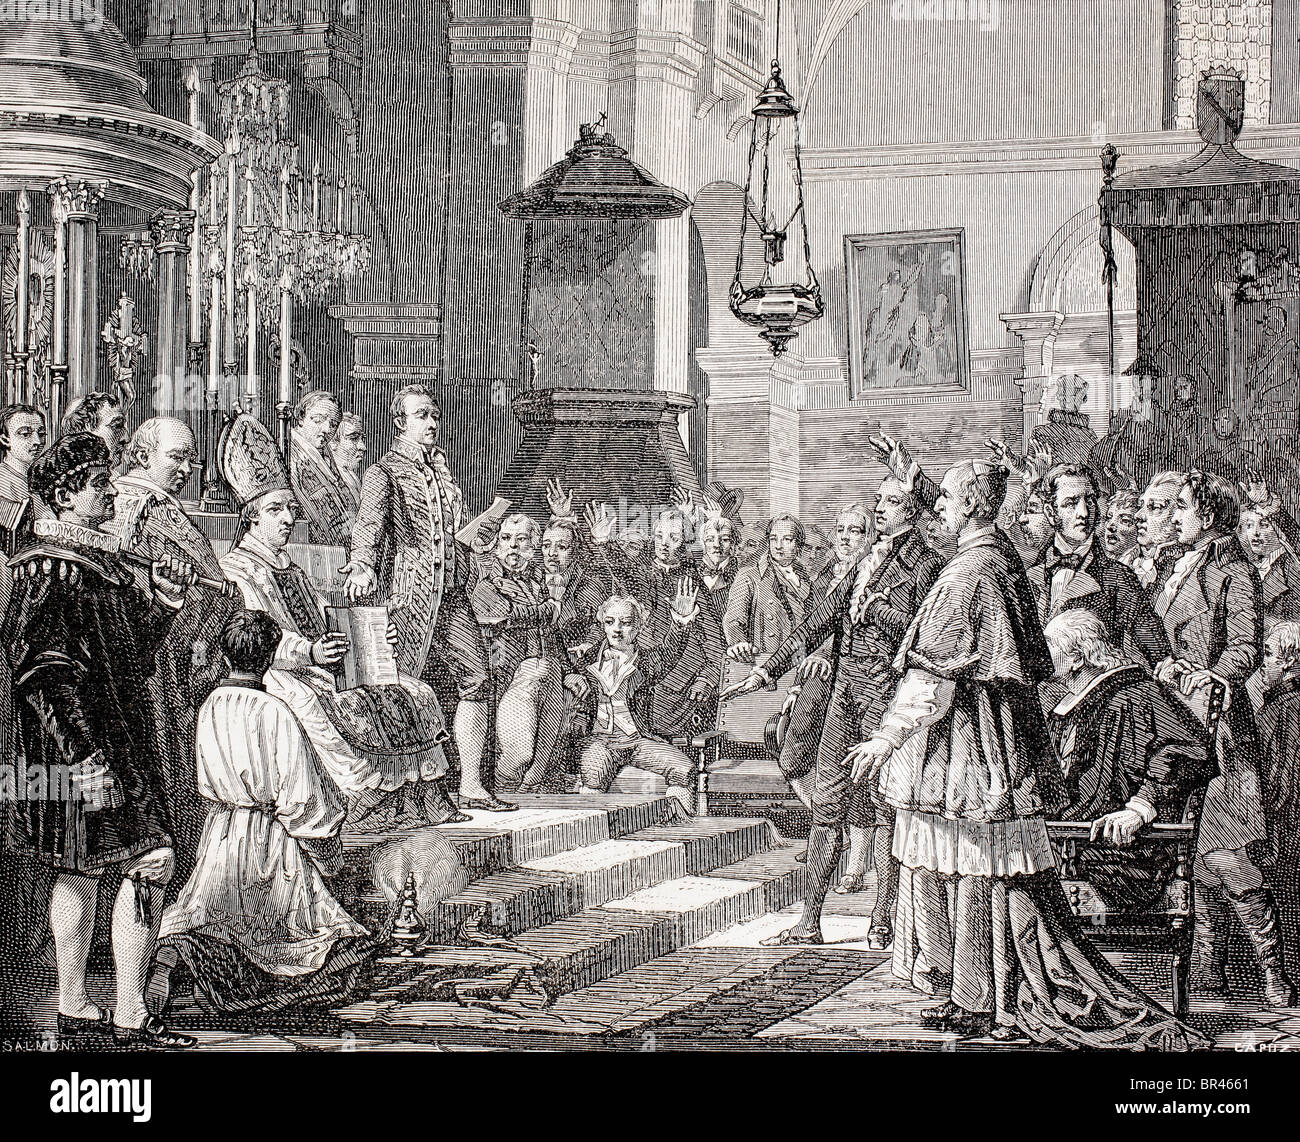 Angelobung der Abgeordneten während der Eröffnungsveranstaltung der Cortes von Cadiz, Spanien, 1810. Stockfoto